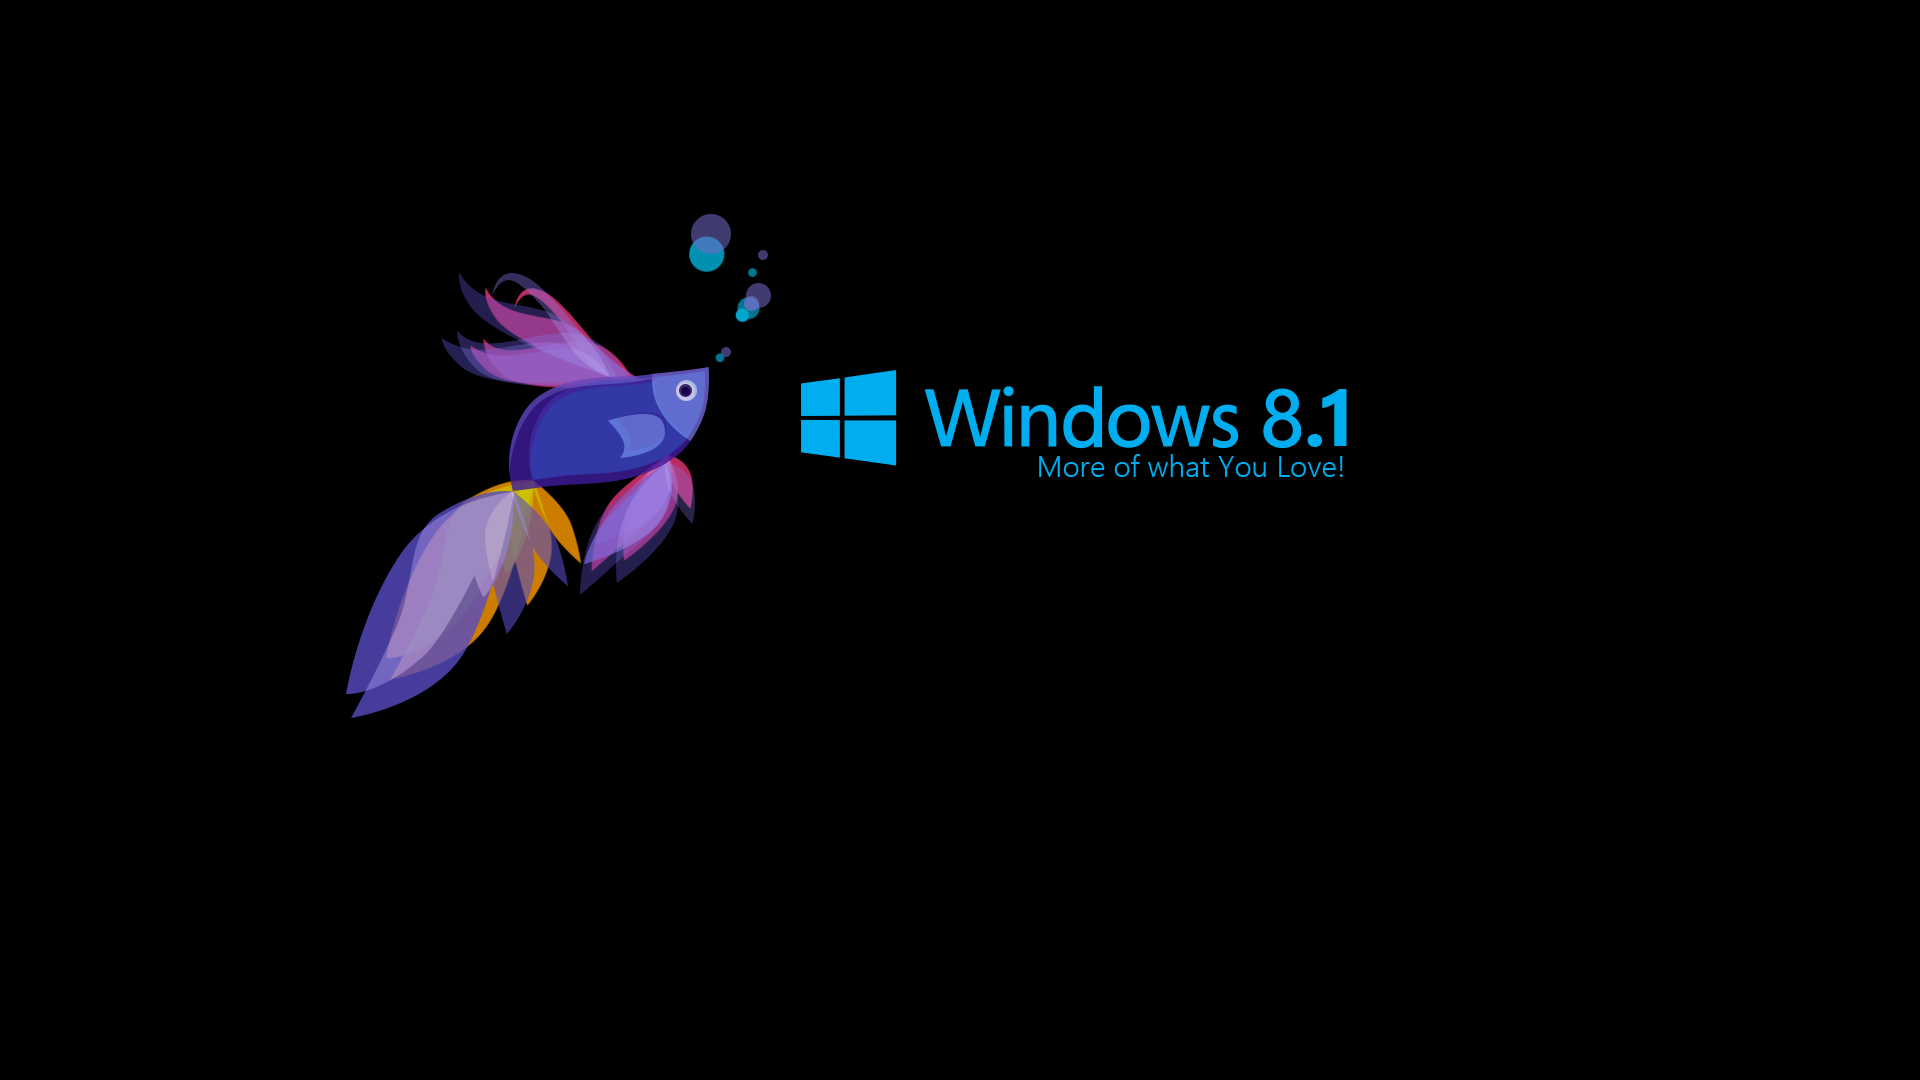 Chủ đề hình nền Windows 8.1 HD: Với bộ sưu tập chủ đề hình nền Windwos 8.1 HD đa dạng, sang trọng, bạn sẽ tìm thấy điều gì đó phù hợp với gu thẩm mỹ của mình. Những hình nền đẹp, sáng tạo và độc đáo sẽ làm cho màn hình máy tính của bạn bừng sáng hơn.